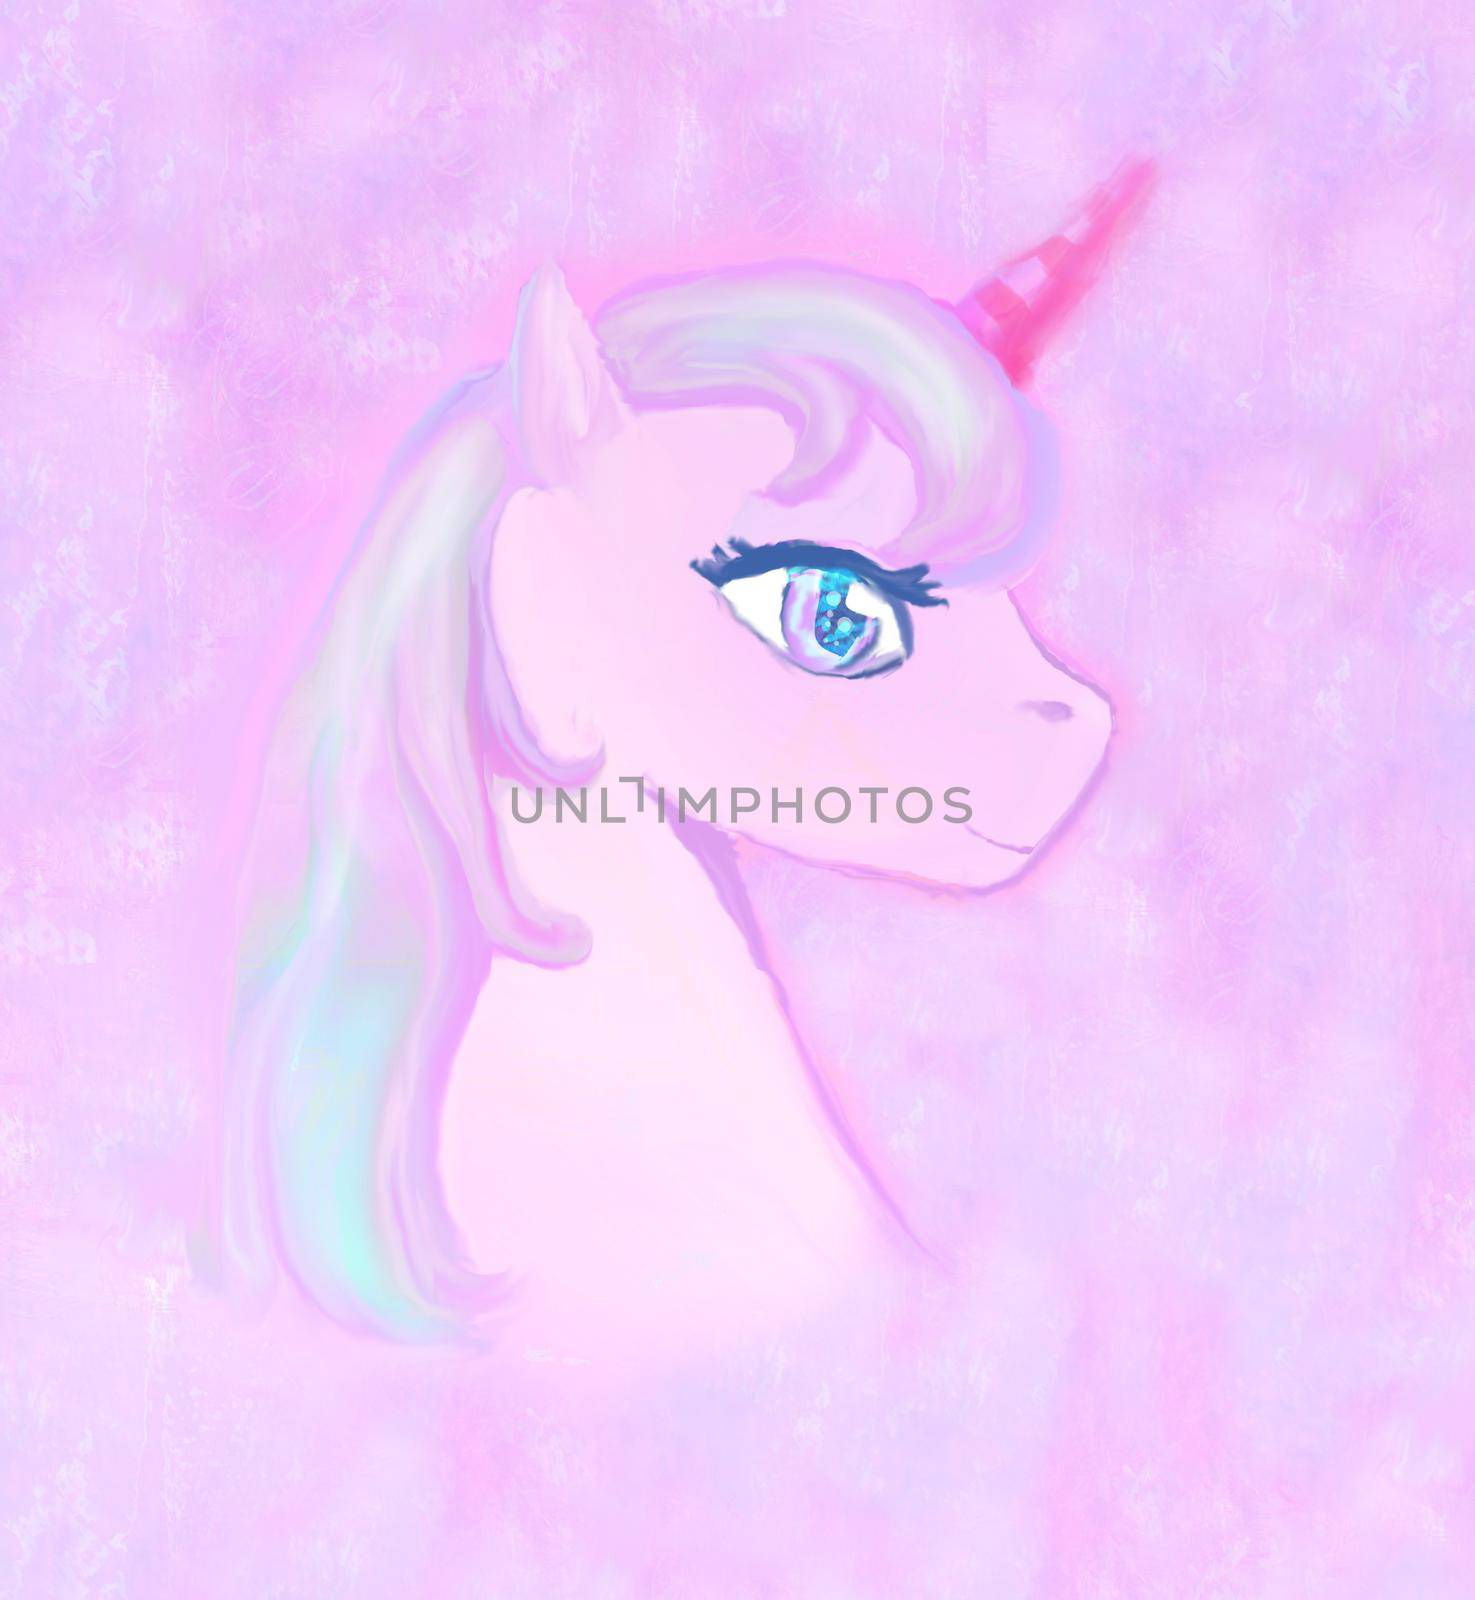 Illustration of beautiful pink Unicorn.